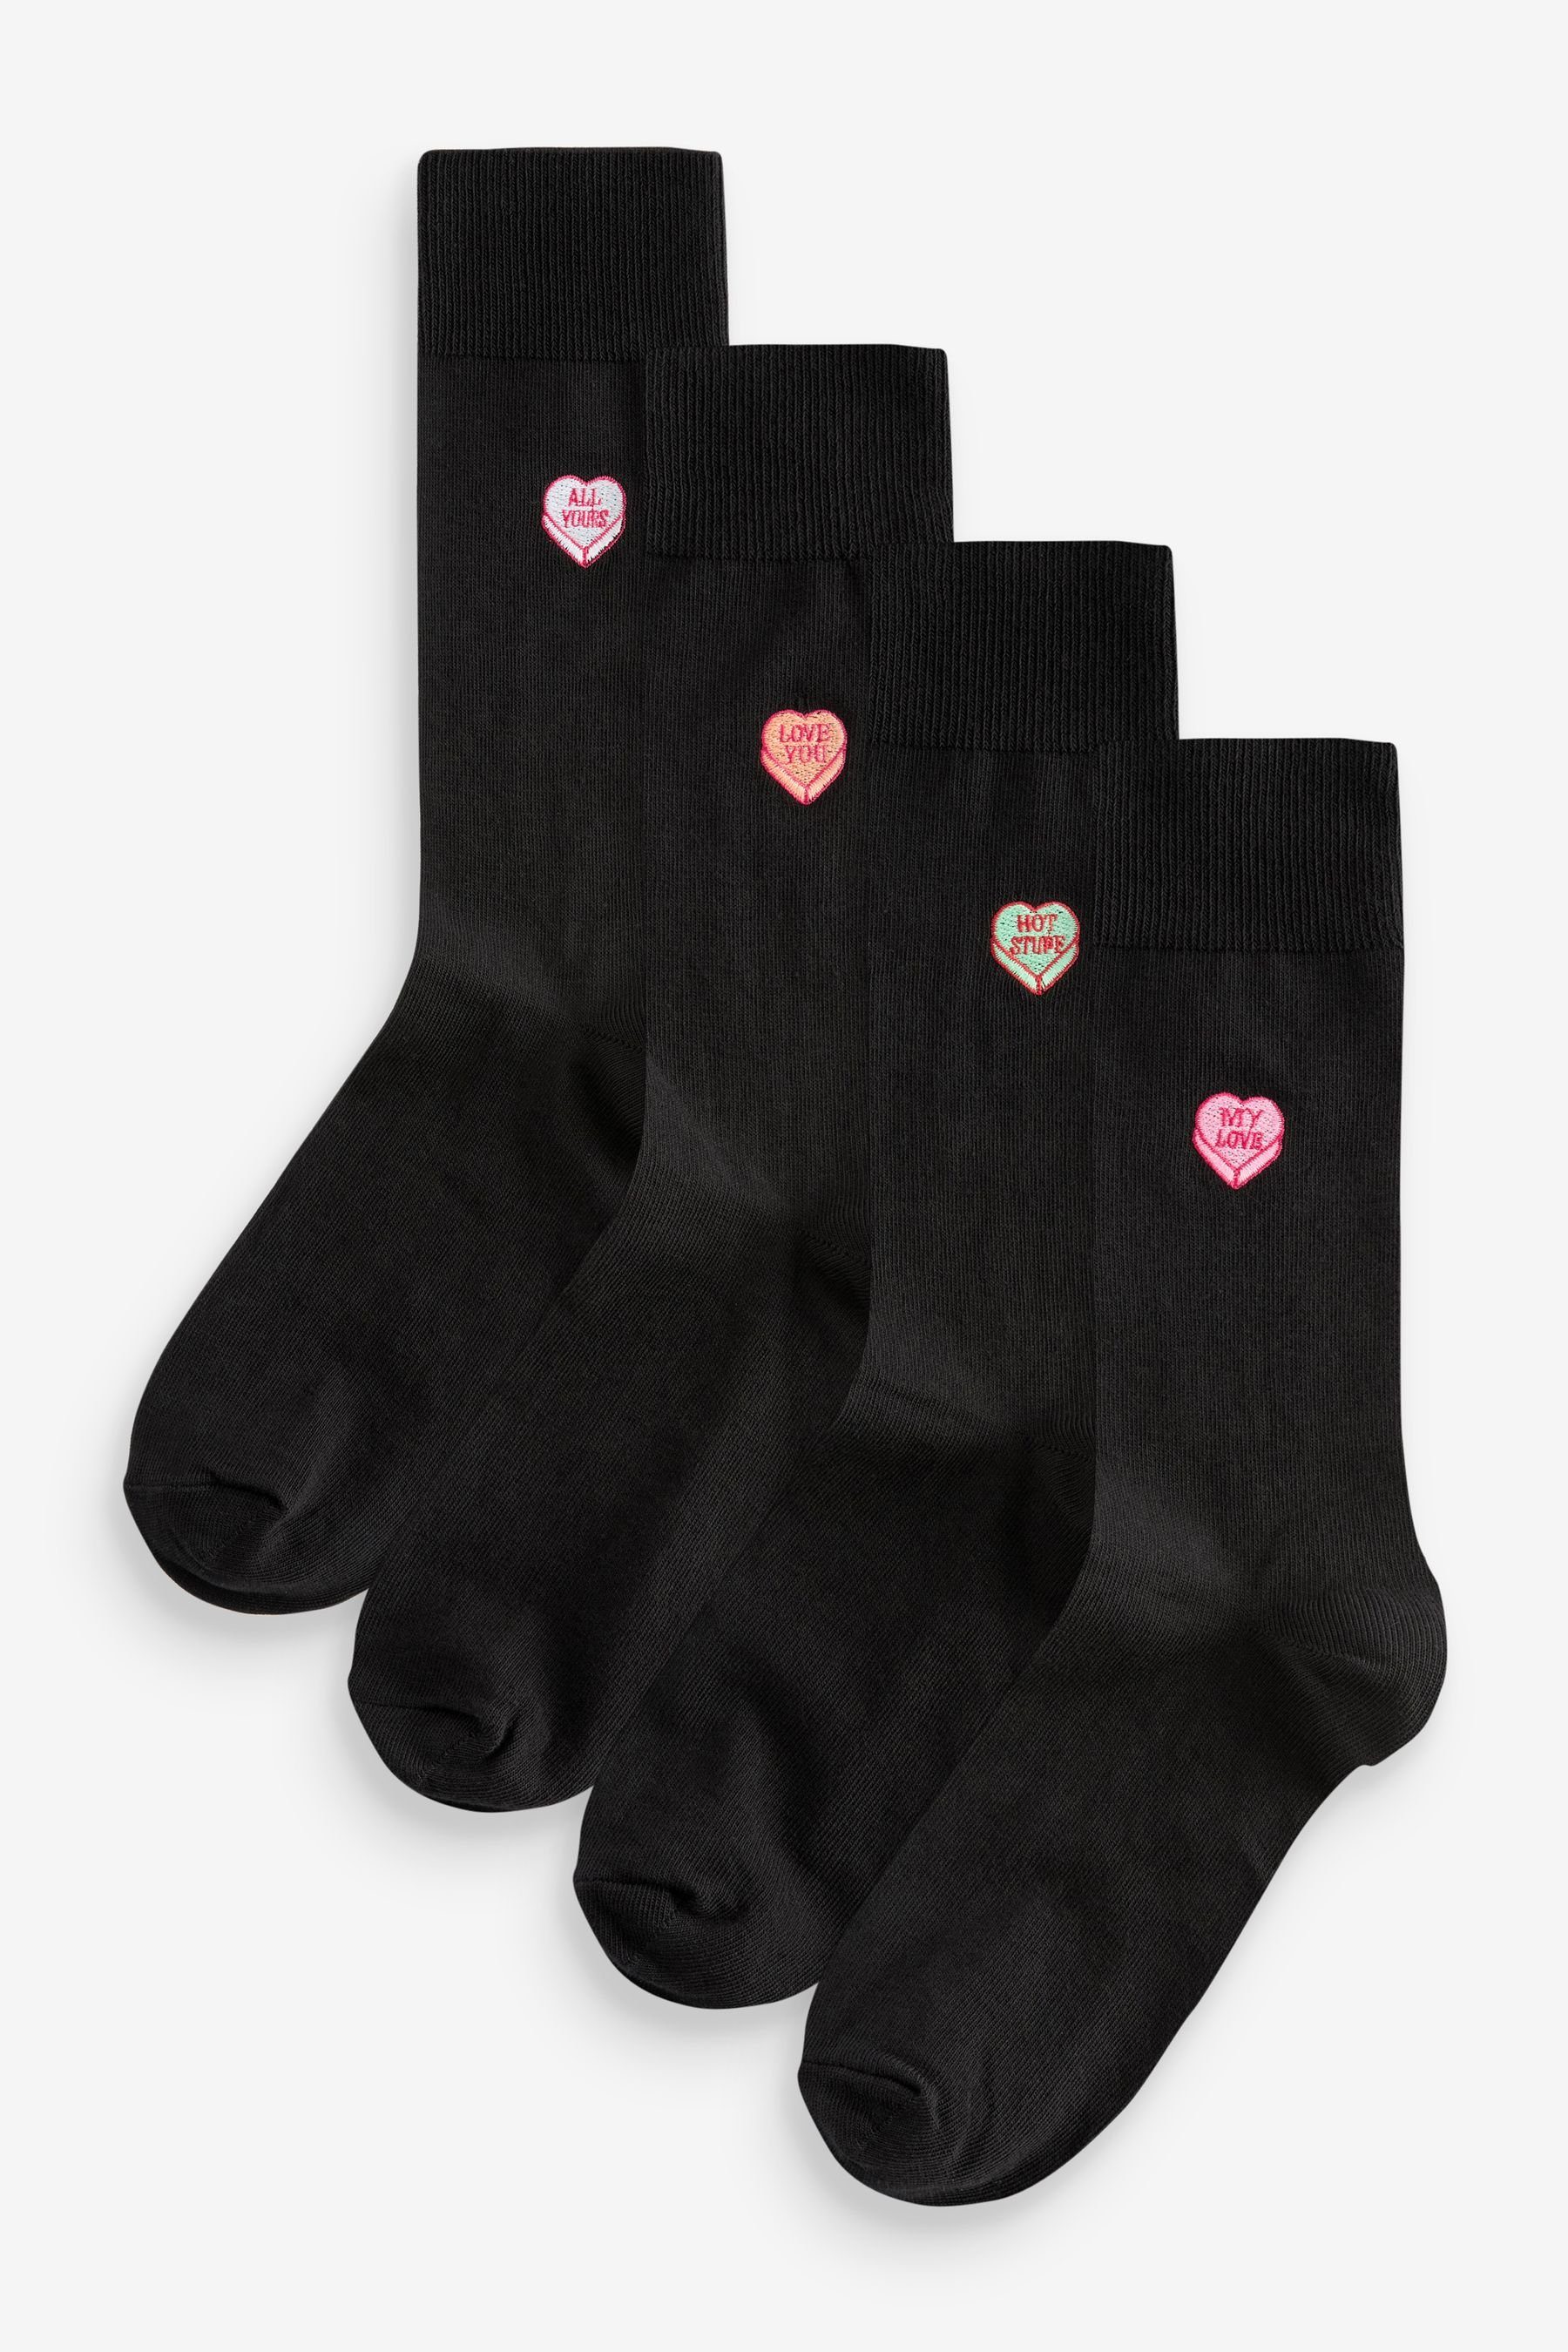 Next Kurzsocken Socken Valentine's Day Stickerei mit (5-Paar) Black